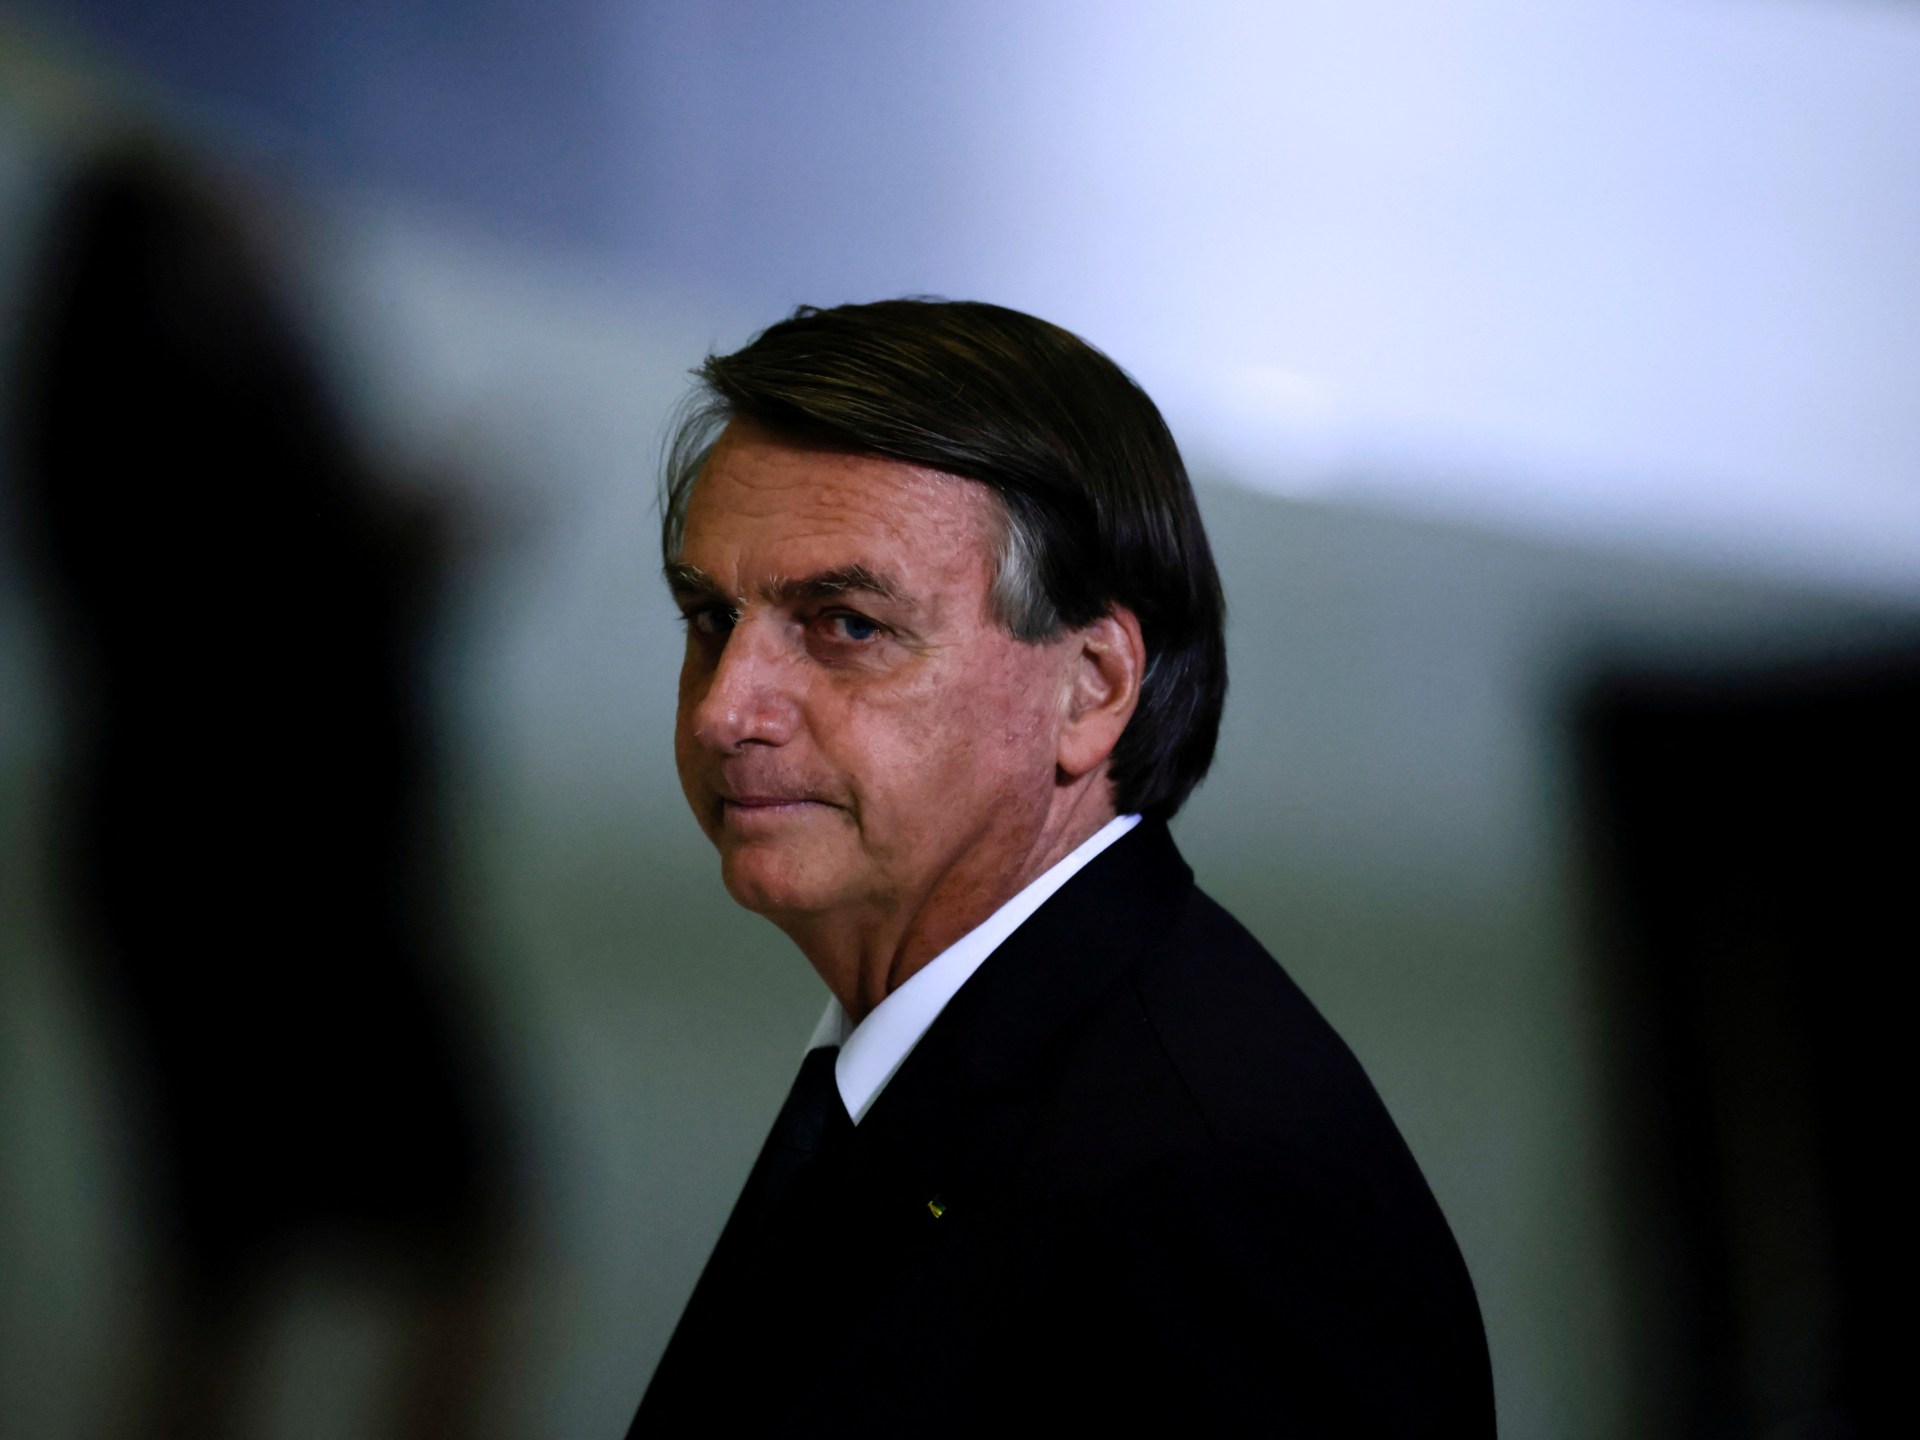 La policía brasileña confisca el pasaporte de Jair Bolsonaro en medio de una investigación sobre el 'golpe' |  Jair Bolsonaro Noticias